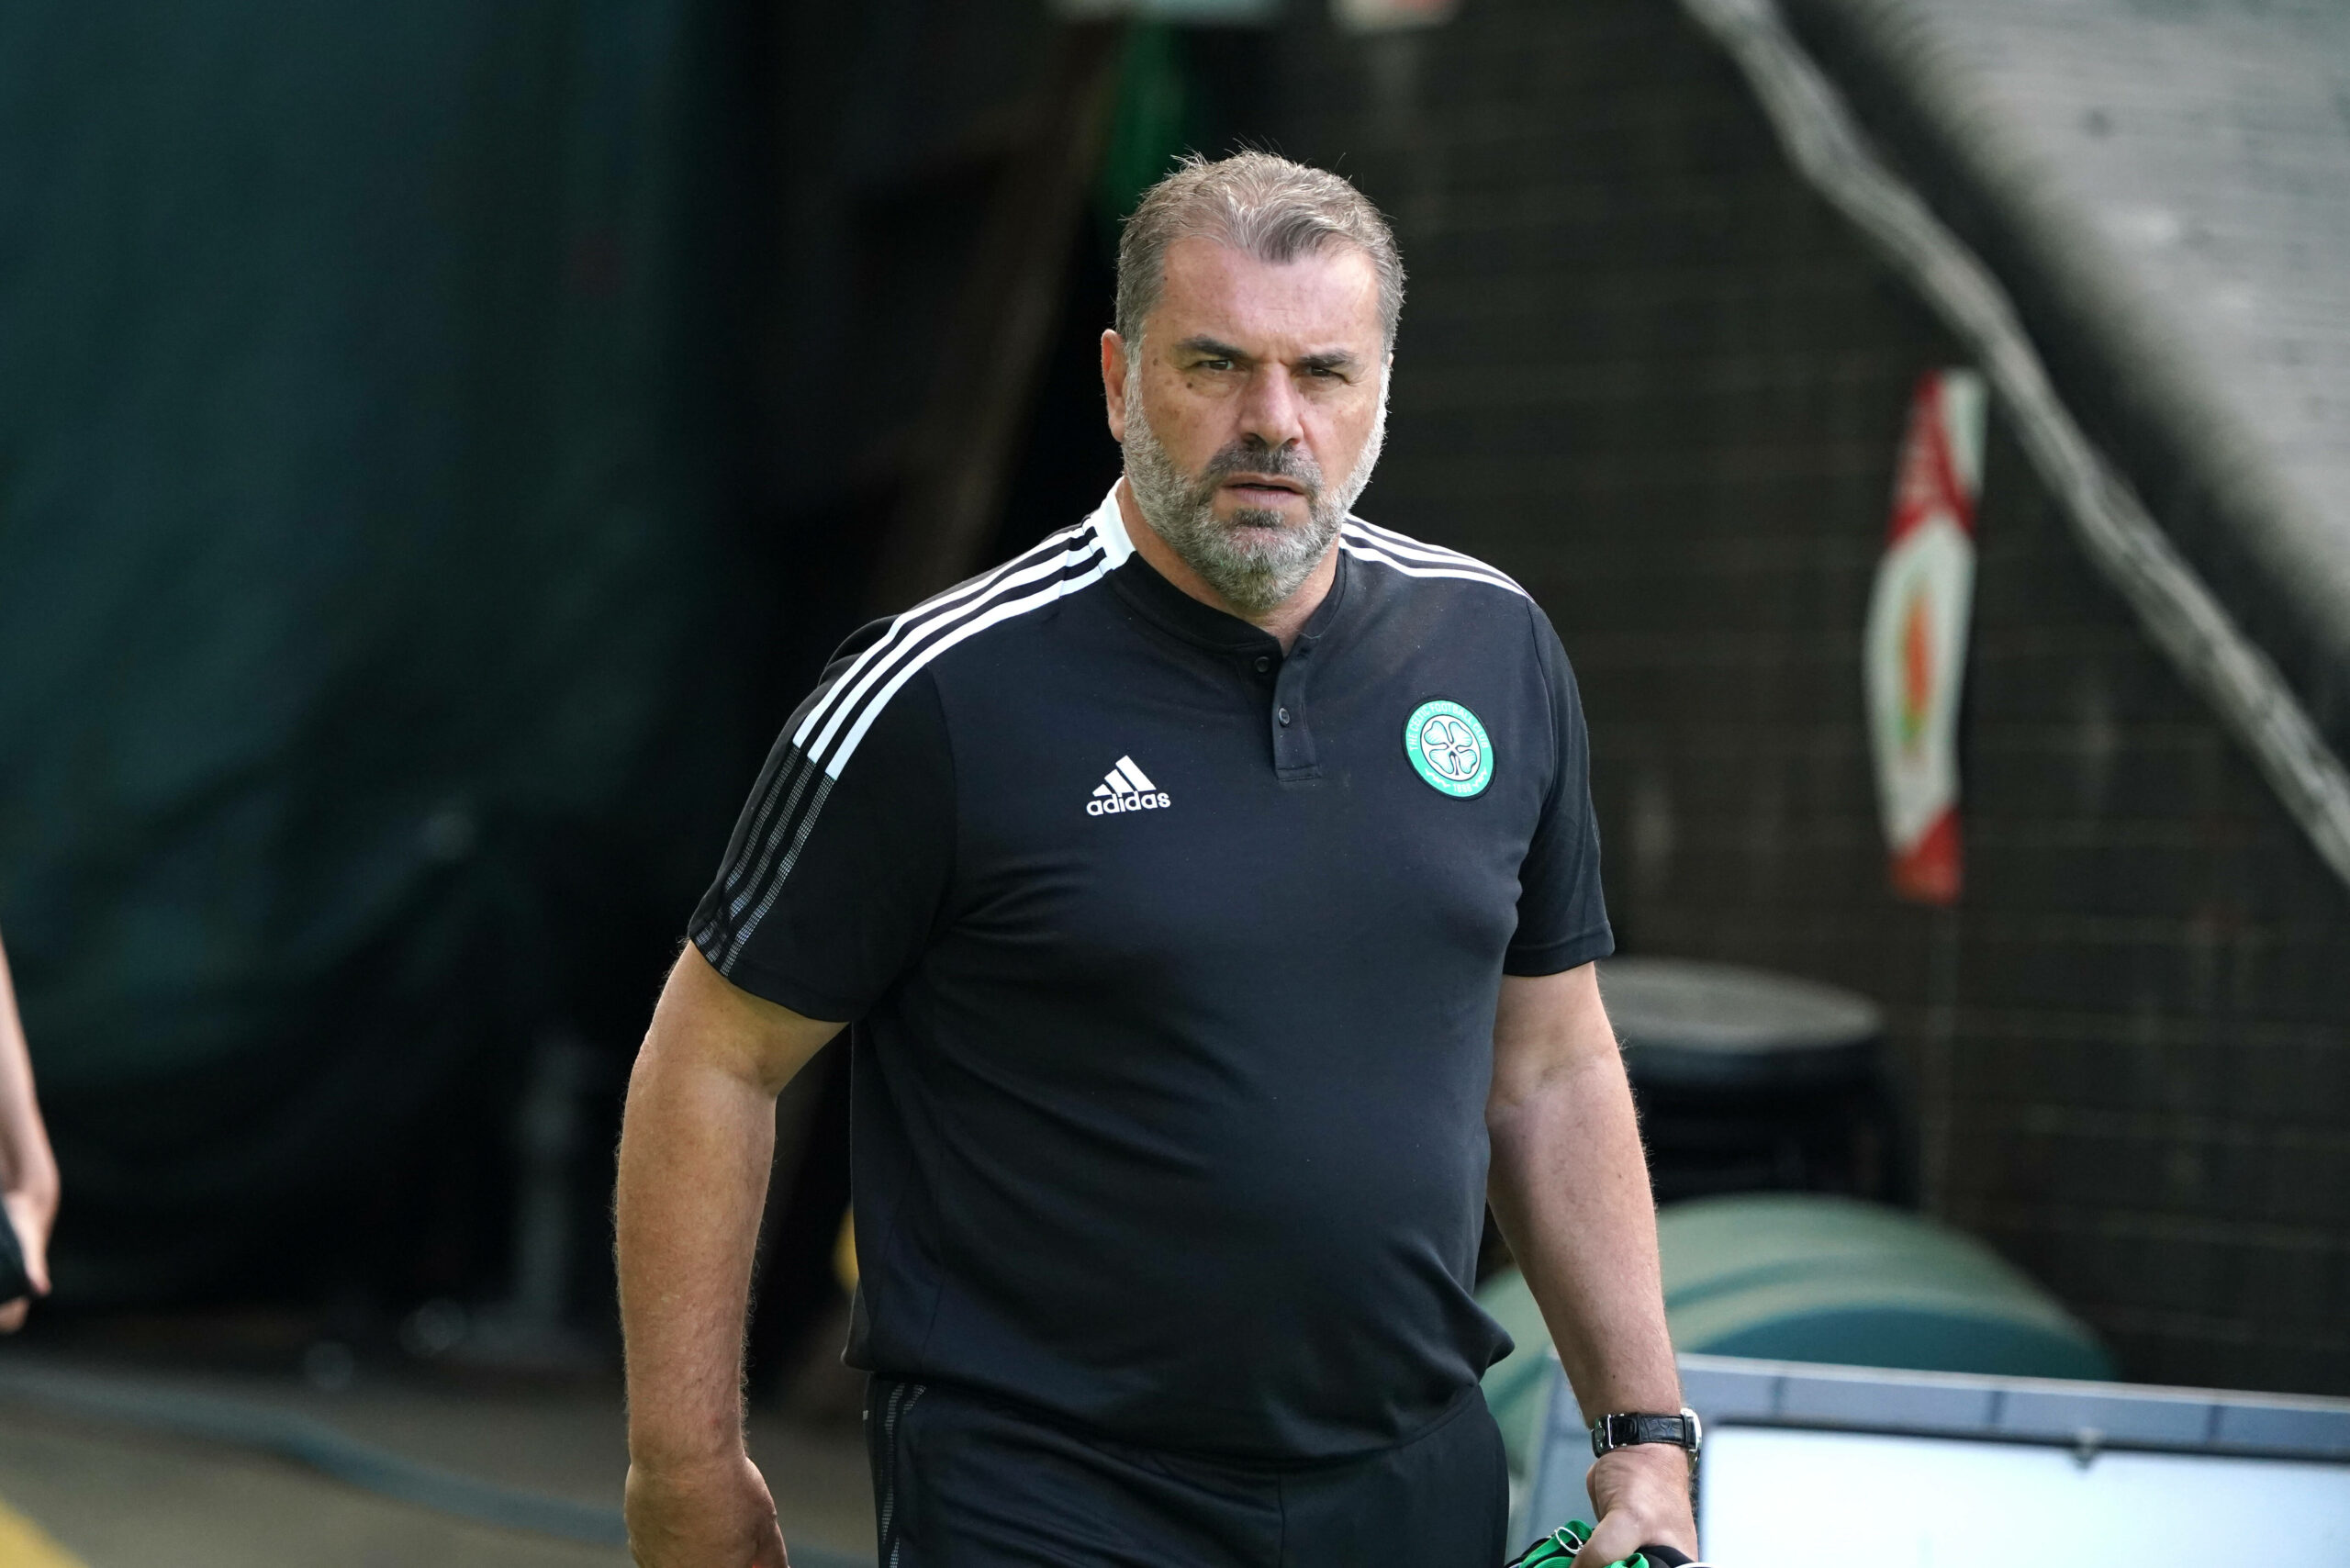 Celtic manager sounds like Pedro Caixinha